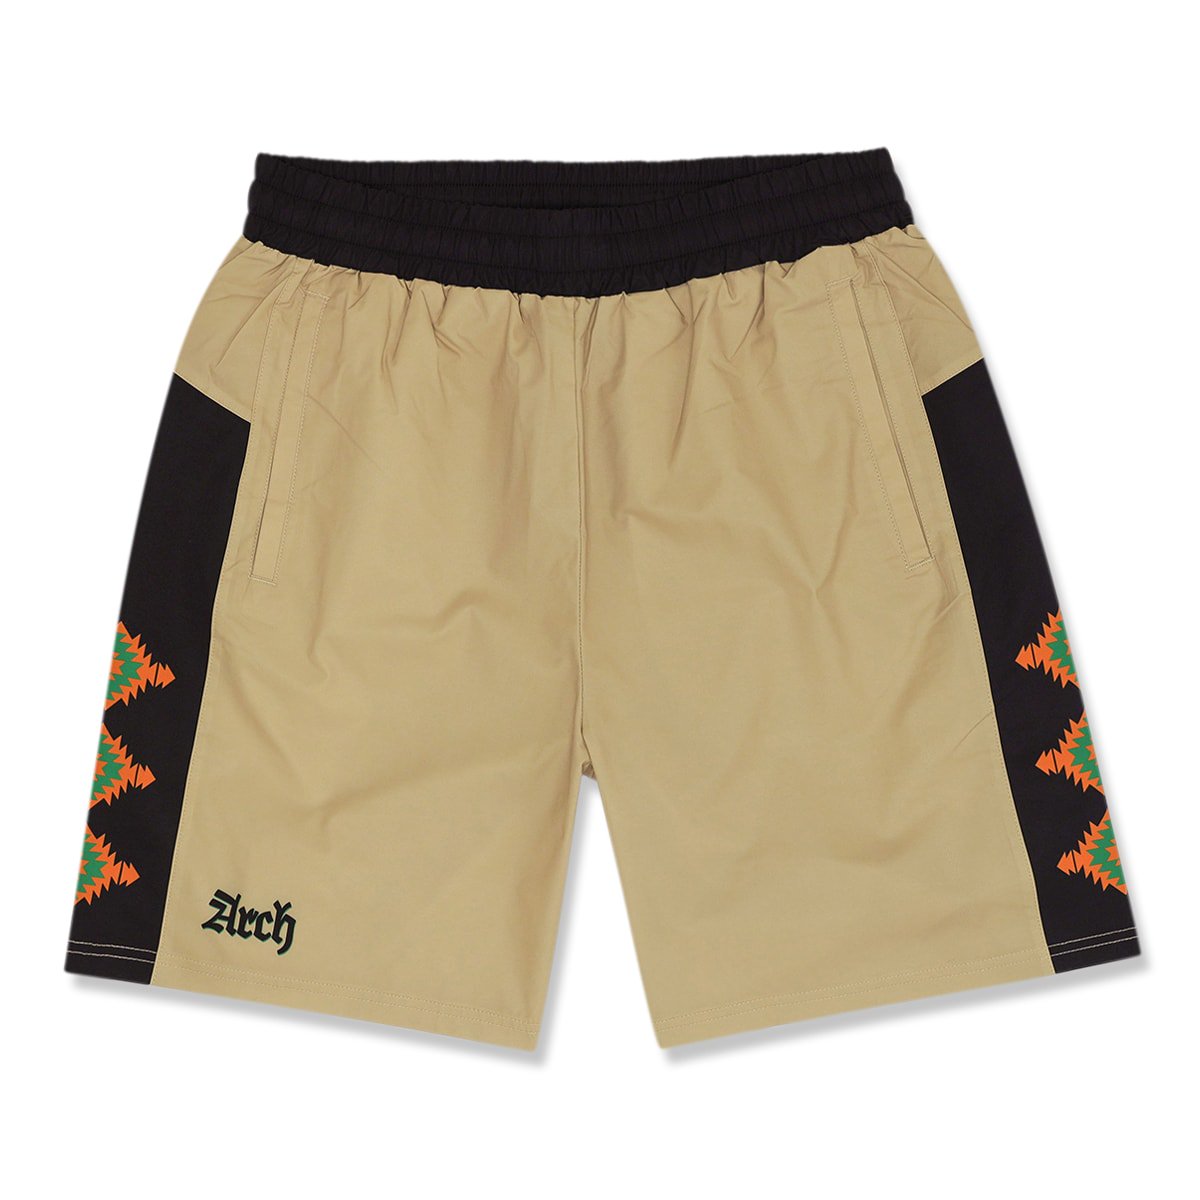 park camp shorts【sand】